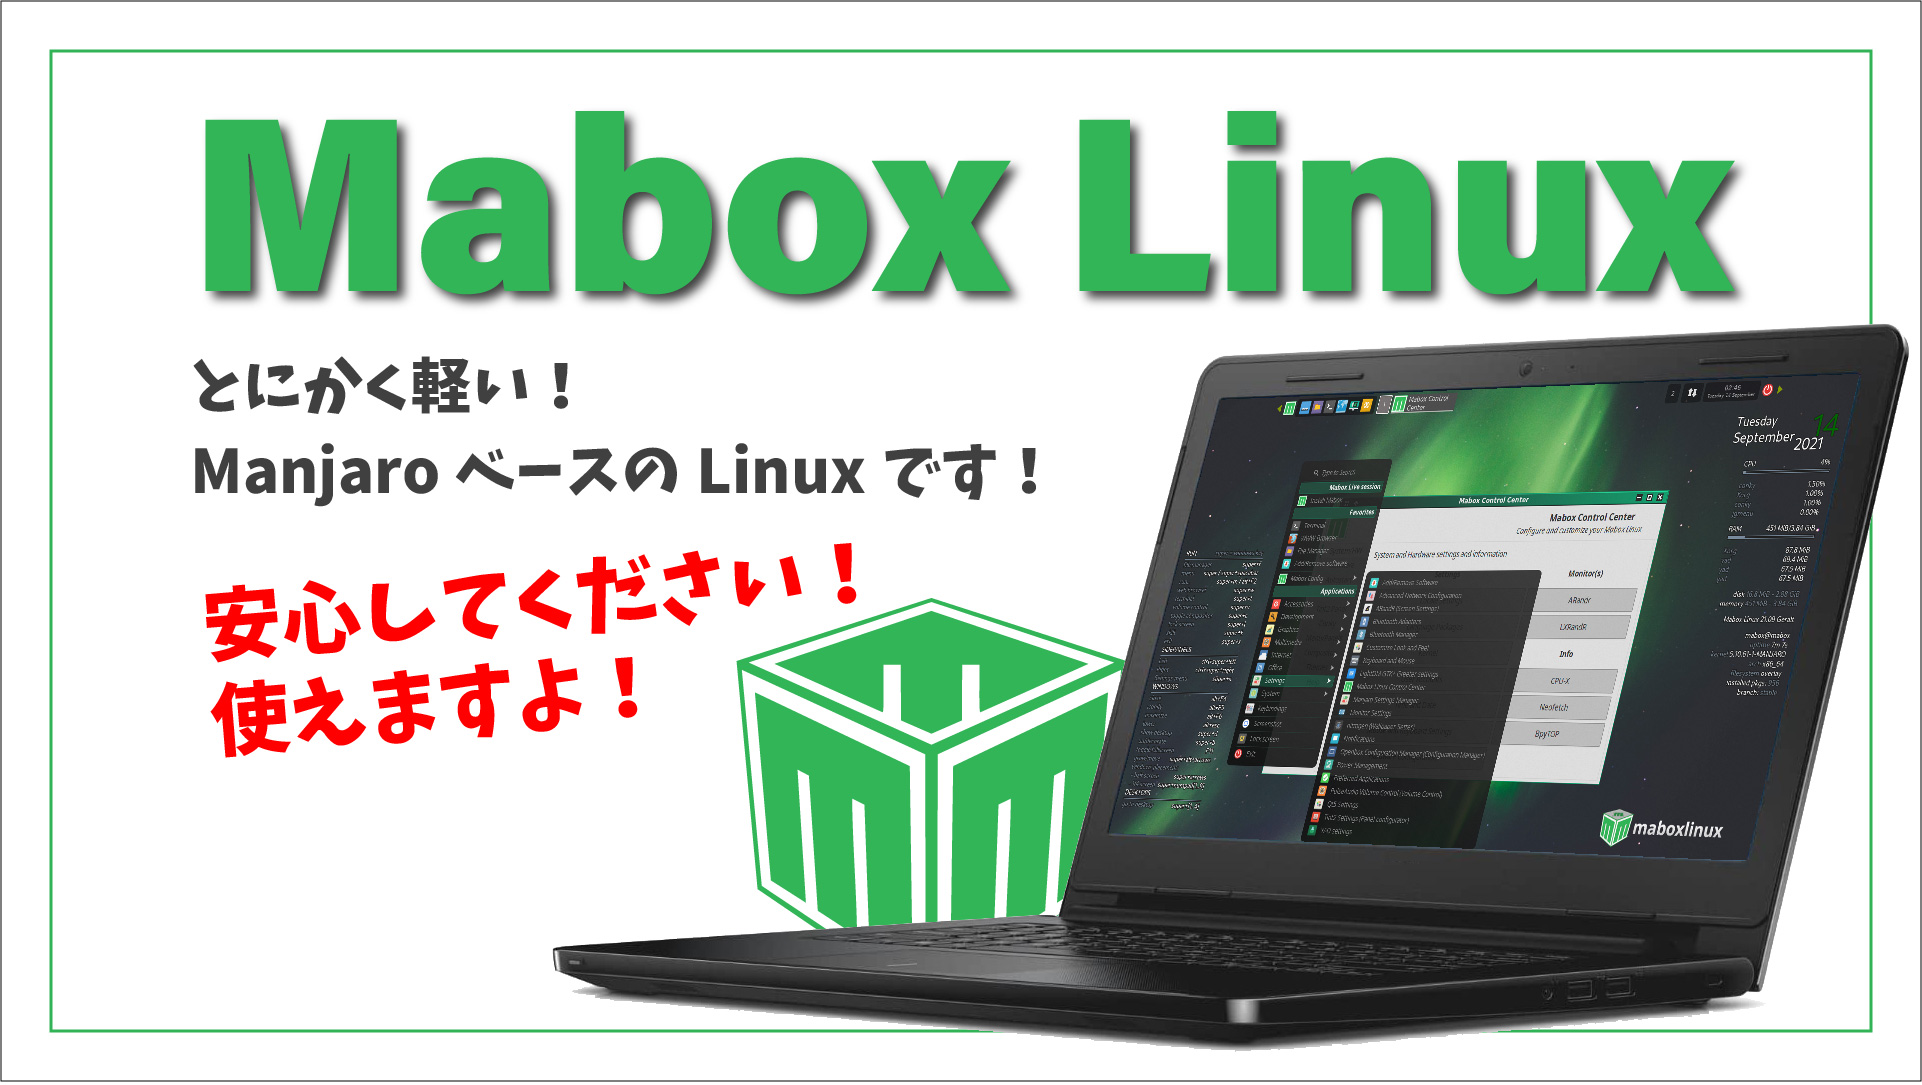 【Mabox Linux】とにかく軽いLinuxです。安心してください！使えますよ！